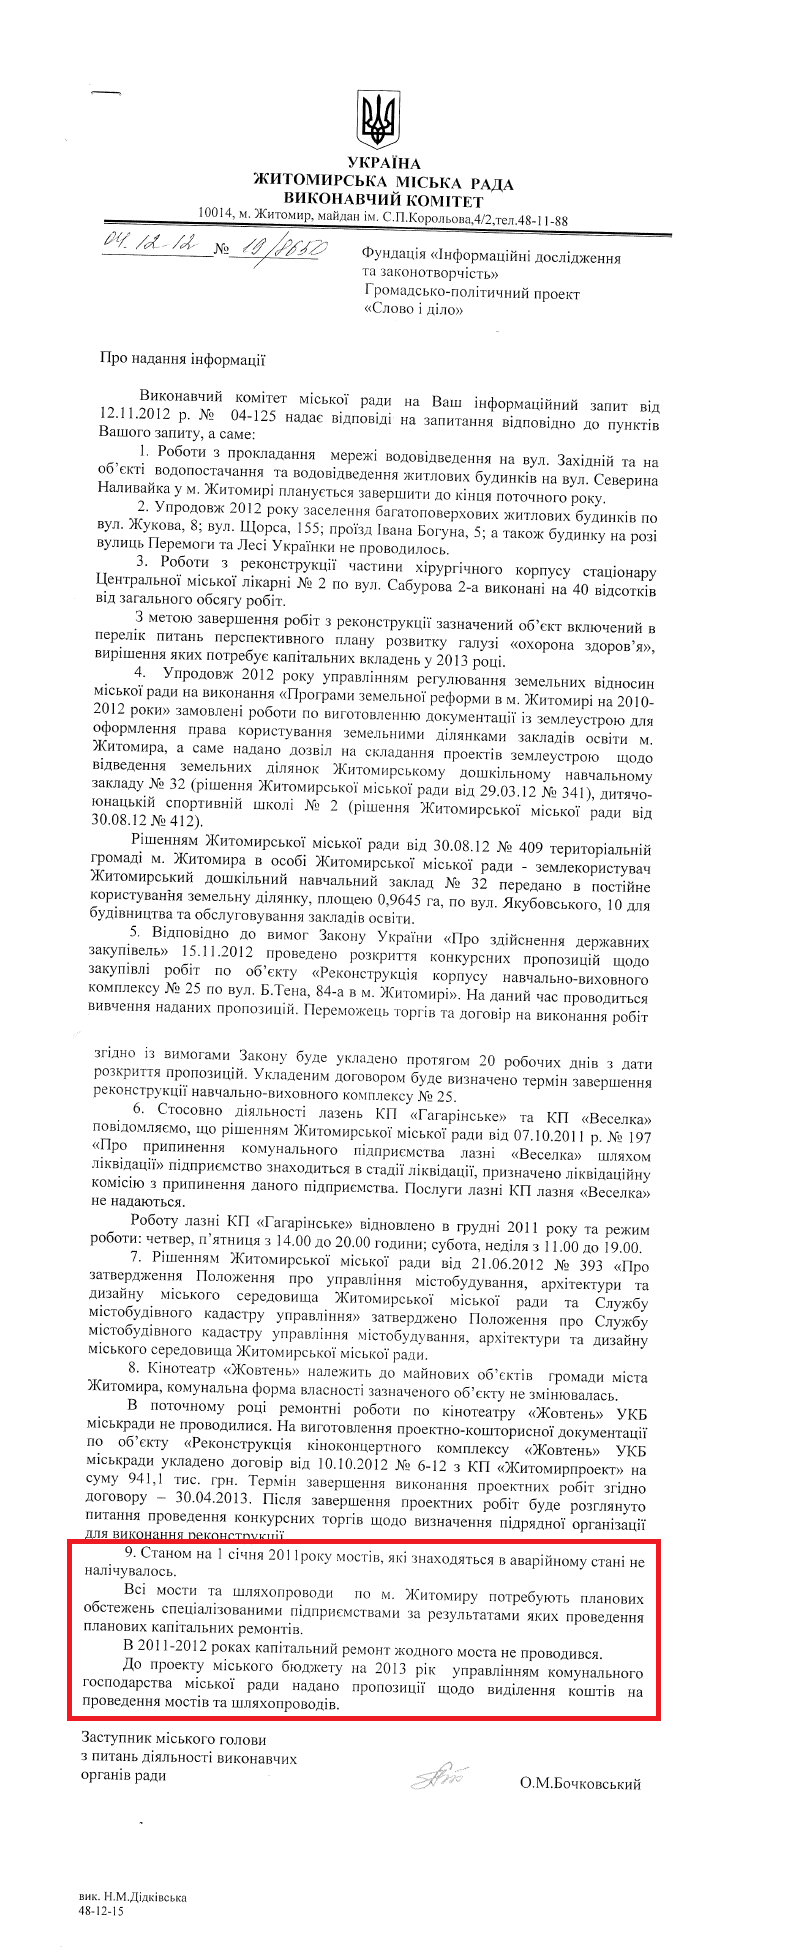 Лист заступника Житомирського міського голови з питань діяльності виконавчих органів влади О.М Бочковського